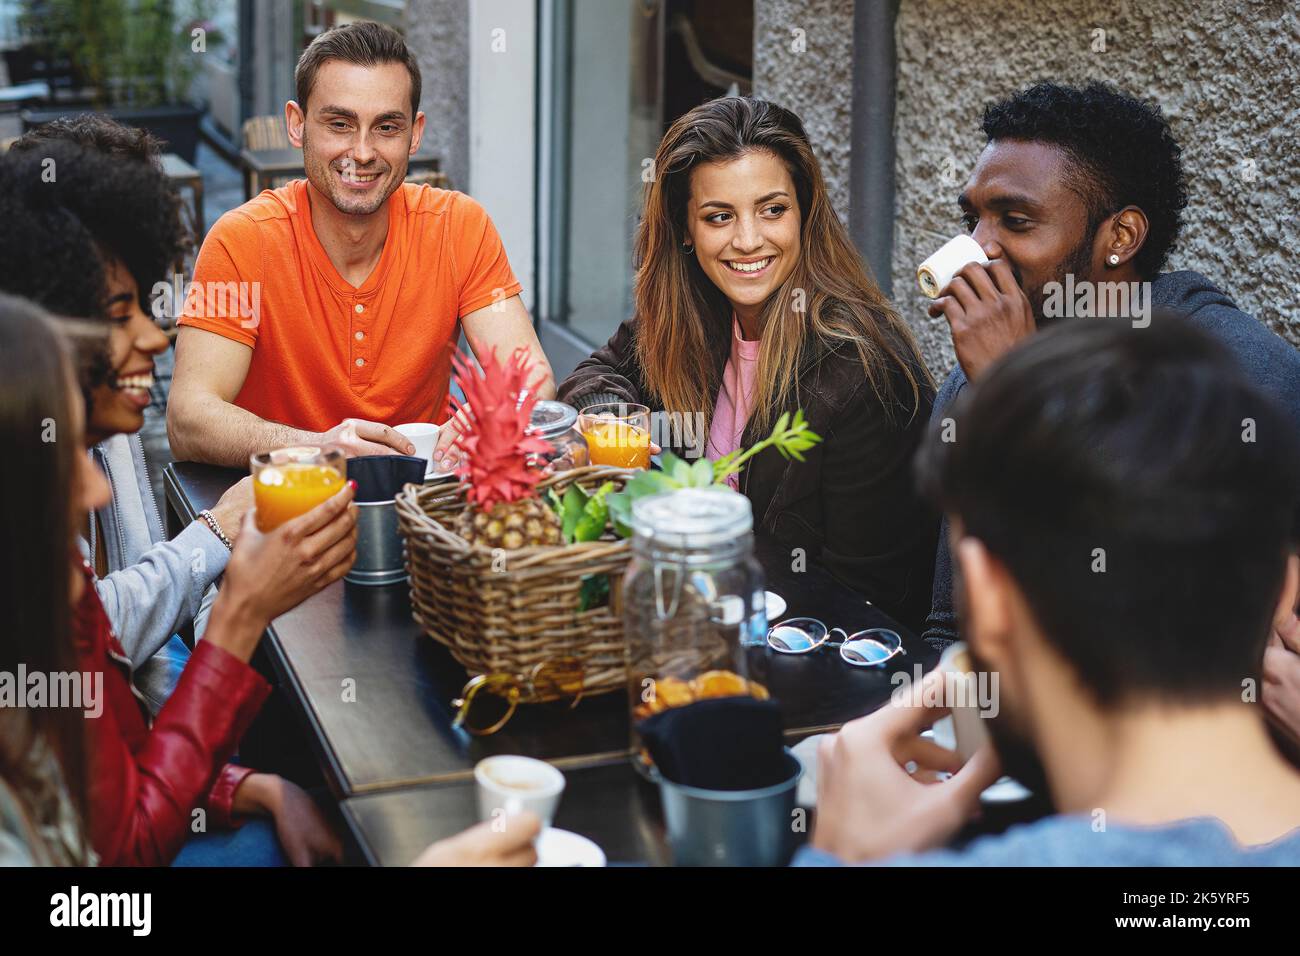 Eine Gruppe junger, multiethnischer junger Leute beim Frühstück, die sich alle unterhalten und beim Brunch-Frühstück Spaß haben - verschiedene Leute im Café, die Obst trinken j Stockfoto